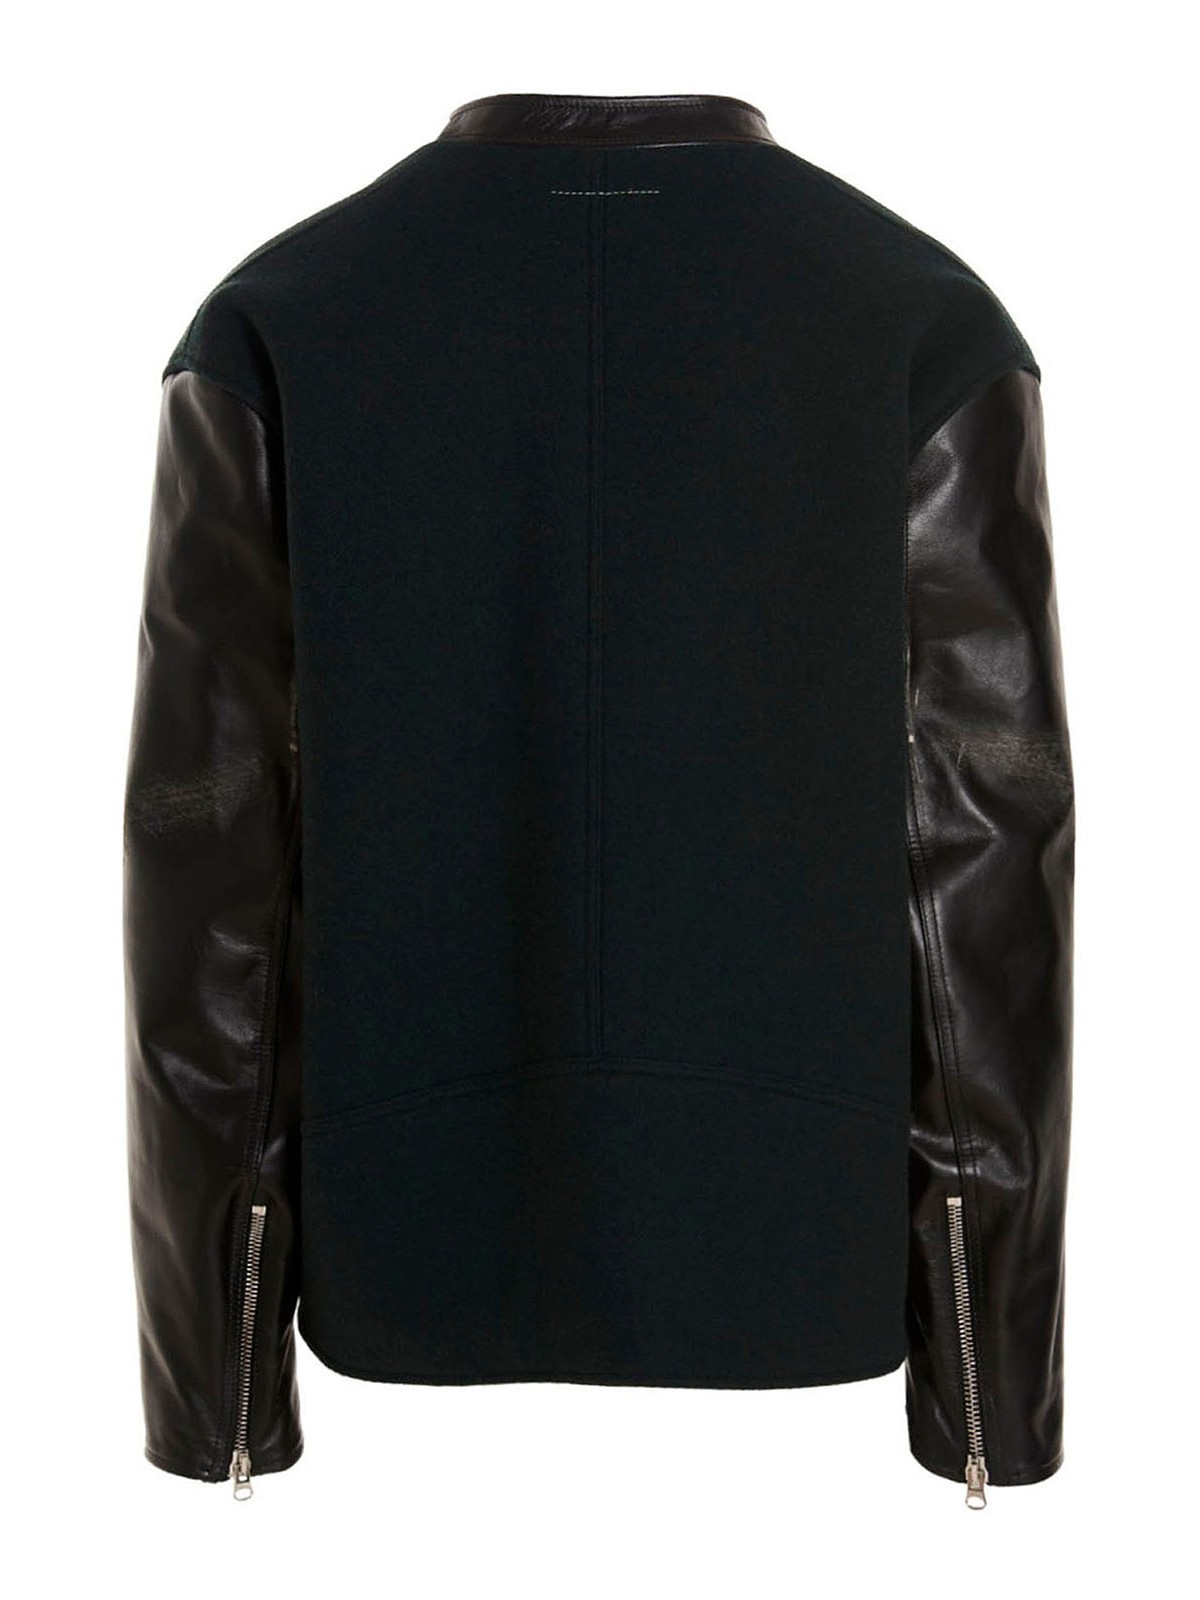 Casual jackets MM6 Maison Margiela - Varsity jacket - S62AN0079S60353650